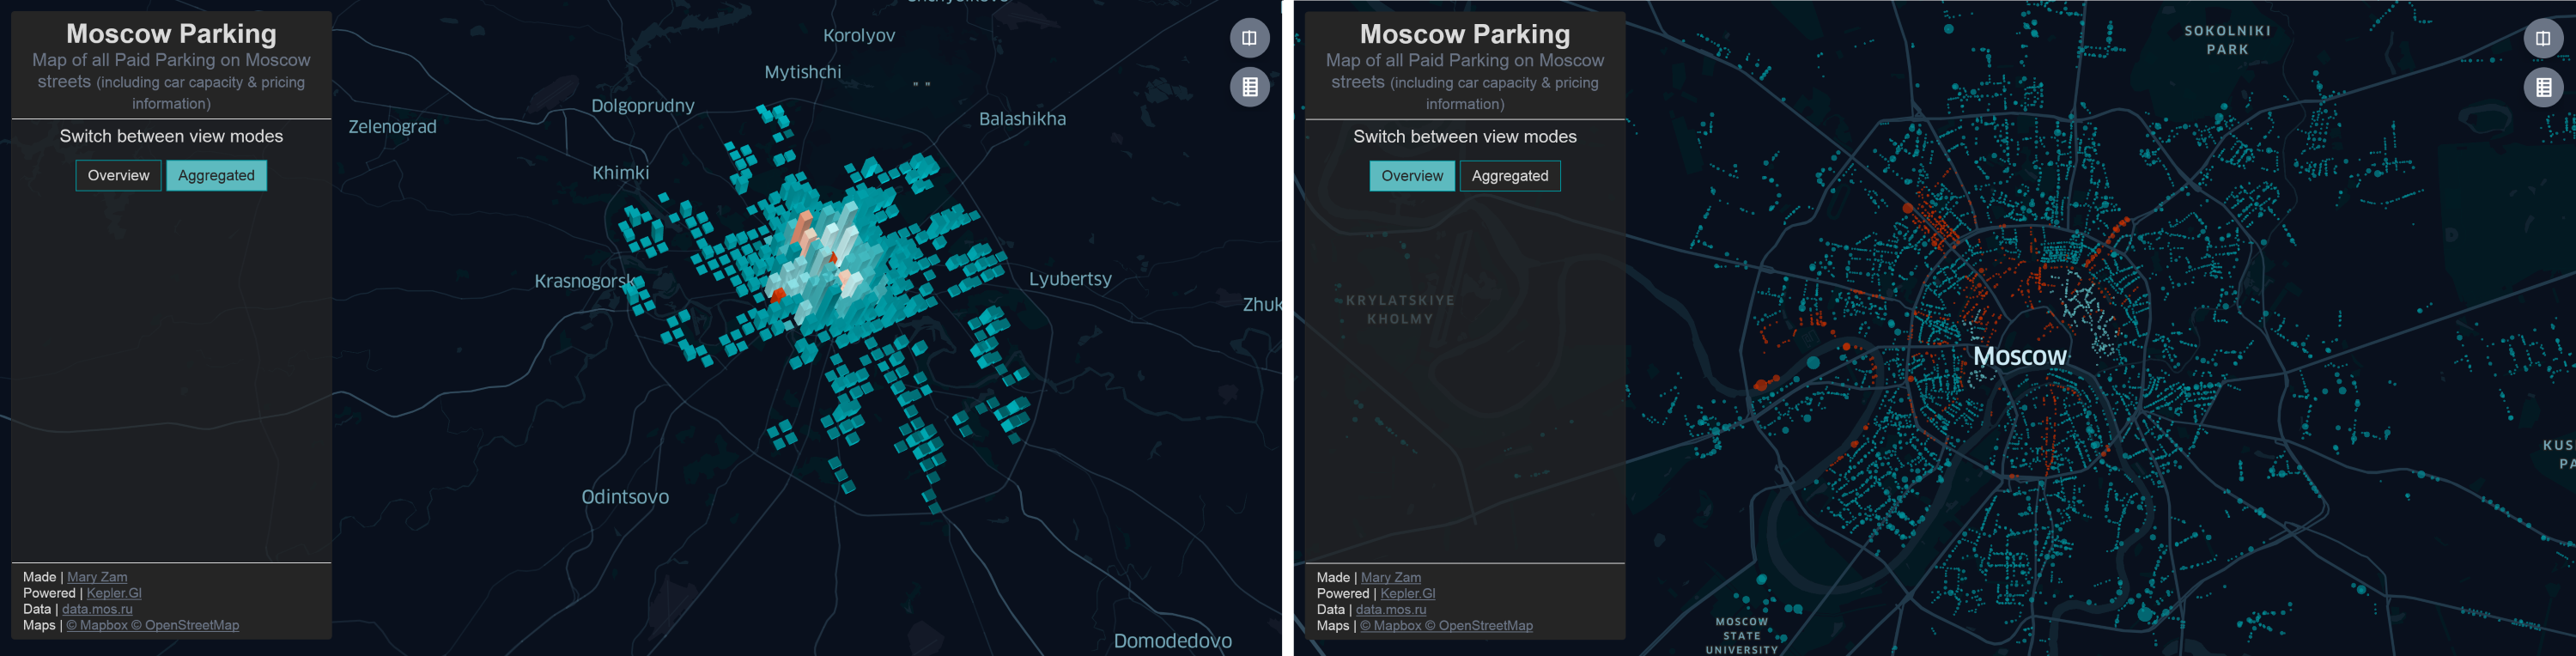 Демо приложение о платных парковках Москвы